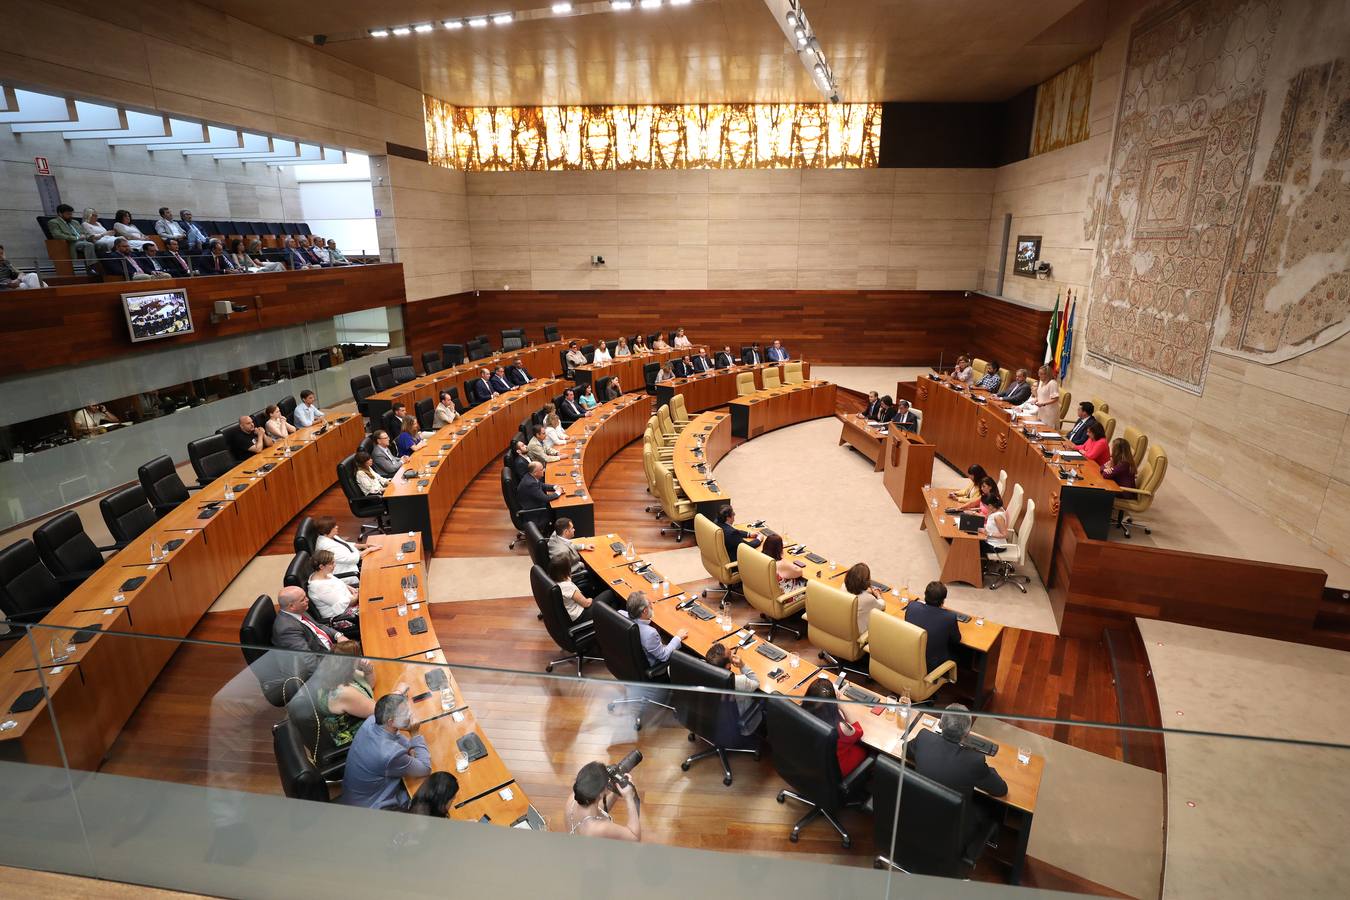 Acto institucional con motivo de la celebración del 40 aniversario de la Constitución y el 35 del Estatuto de Autonomía de Extremadura, con presencia de los integrantes de la Mesa del Congreso y de la Cámara regional.